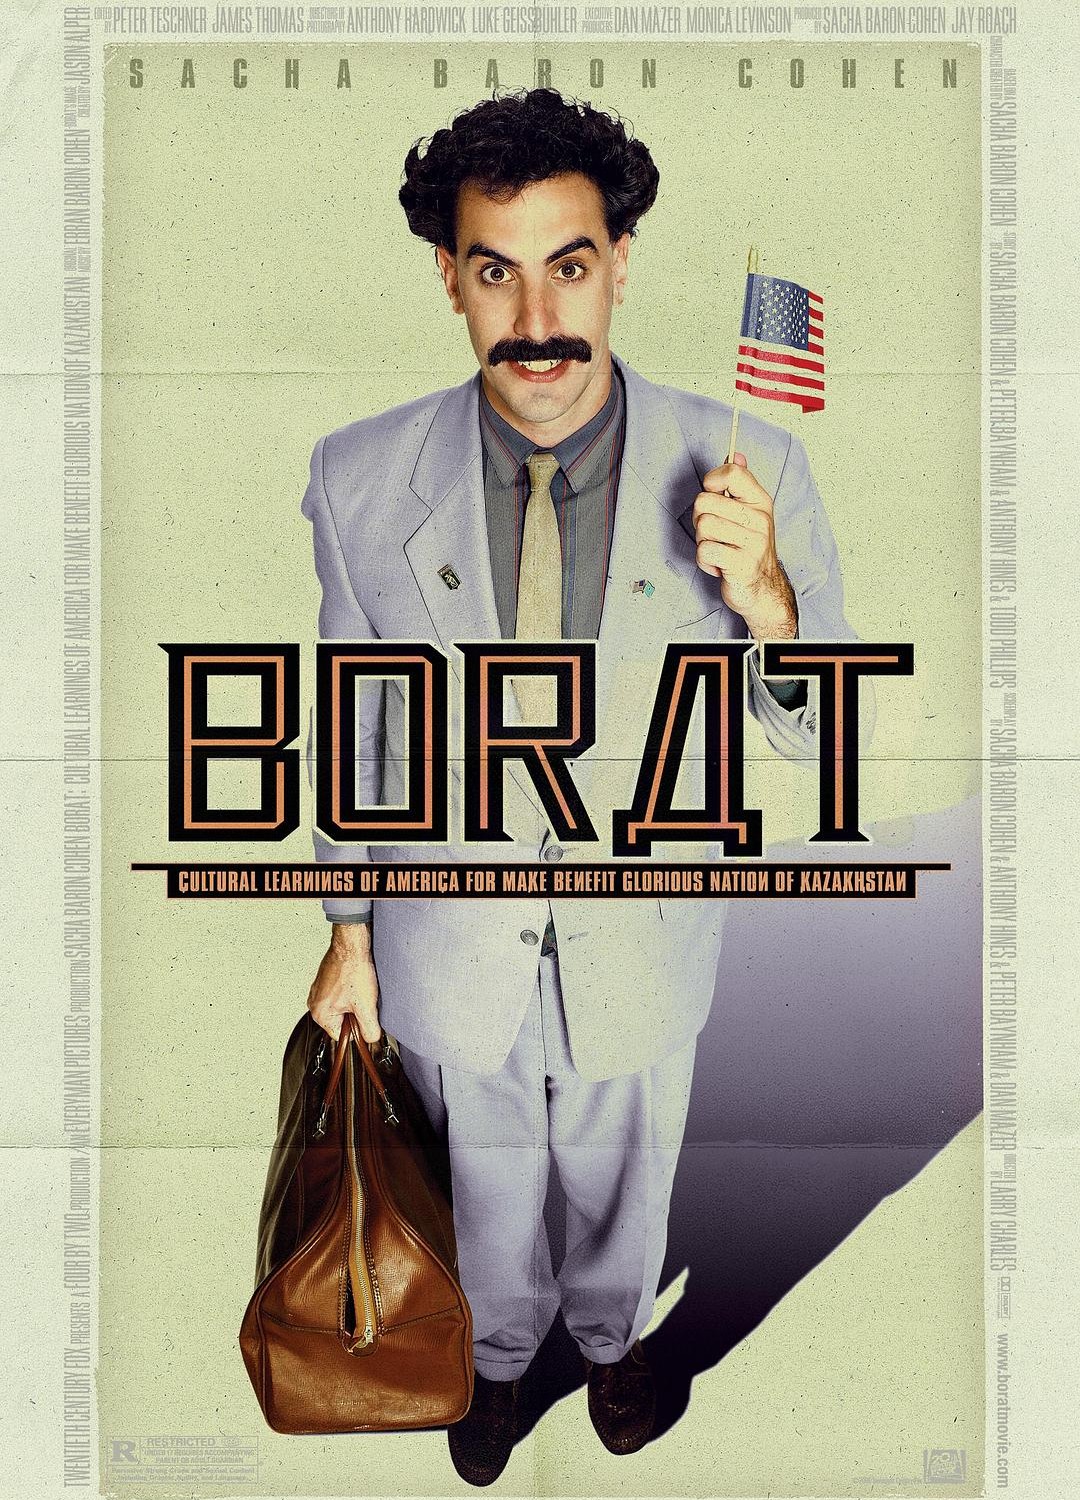 [波拉特：为了建设伟大的祖国哈萨克斯坦而学习美国文化/波叔出城：哈萨克乡下佬去美国搵着数/芭乐特：哈萨克青年必修(理)美国文化/鲍莱特/宝拉西游记/Borat!/Borat: Cultural Learnings of America for Make Benefit Glorious Nation of Kazakhstan][2006][美国][喜剧][英语]